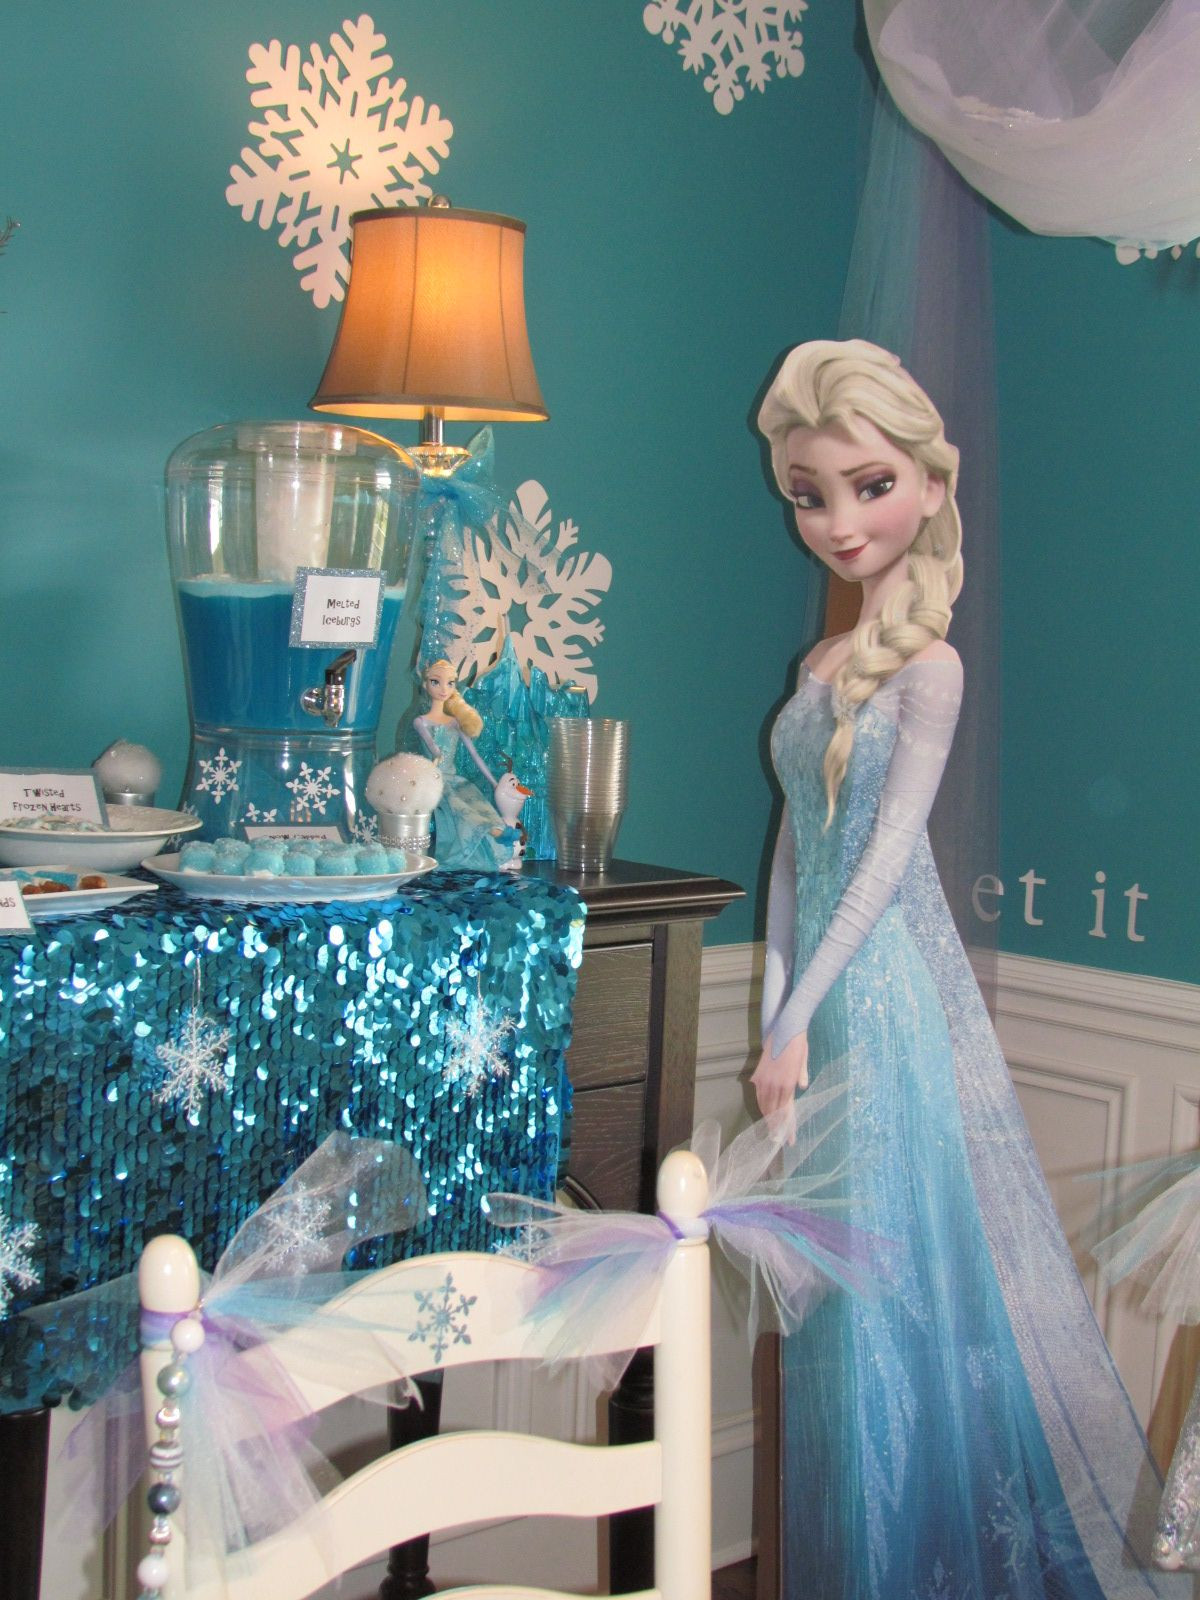 Elsa Birthday Decorations
 Frozen Birthday Party Elsa Elsa cutout was a fabulous